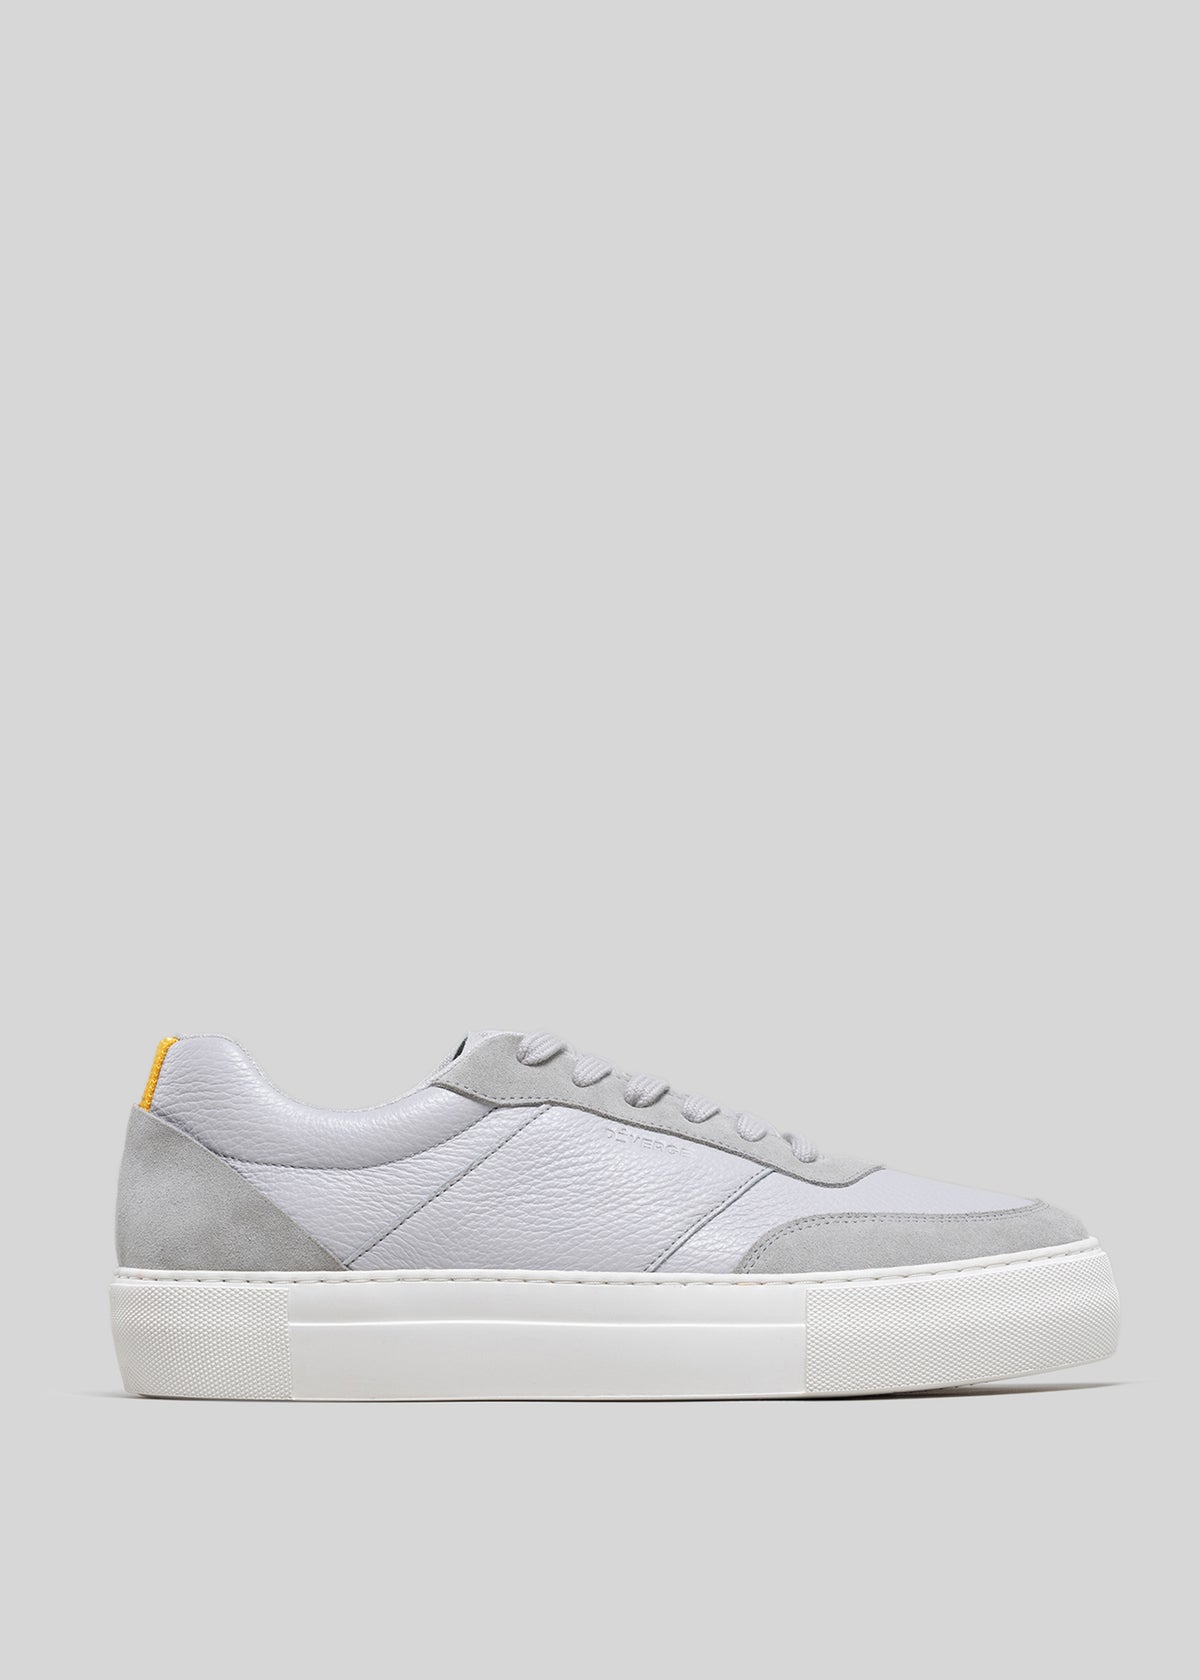 Vista laterale di una sneaker bassa V2 Grey con suola in gomma bianca e una piccola etichetta gialla sul tallone.